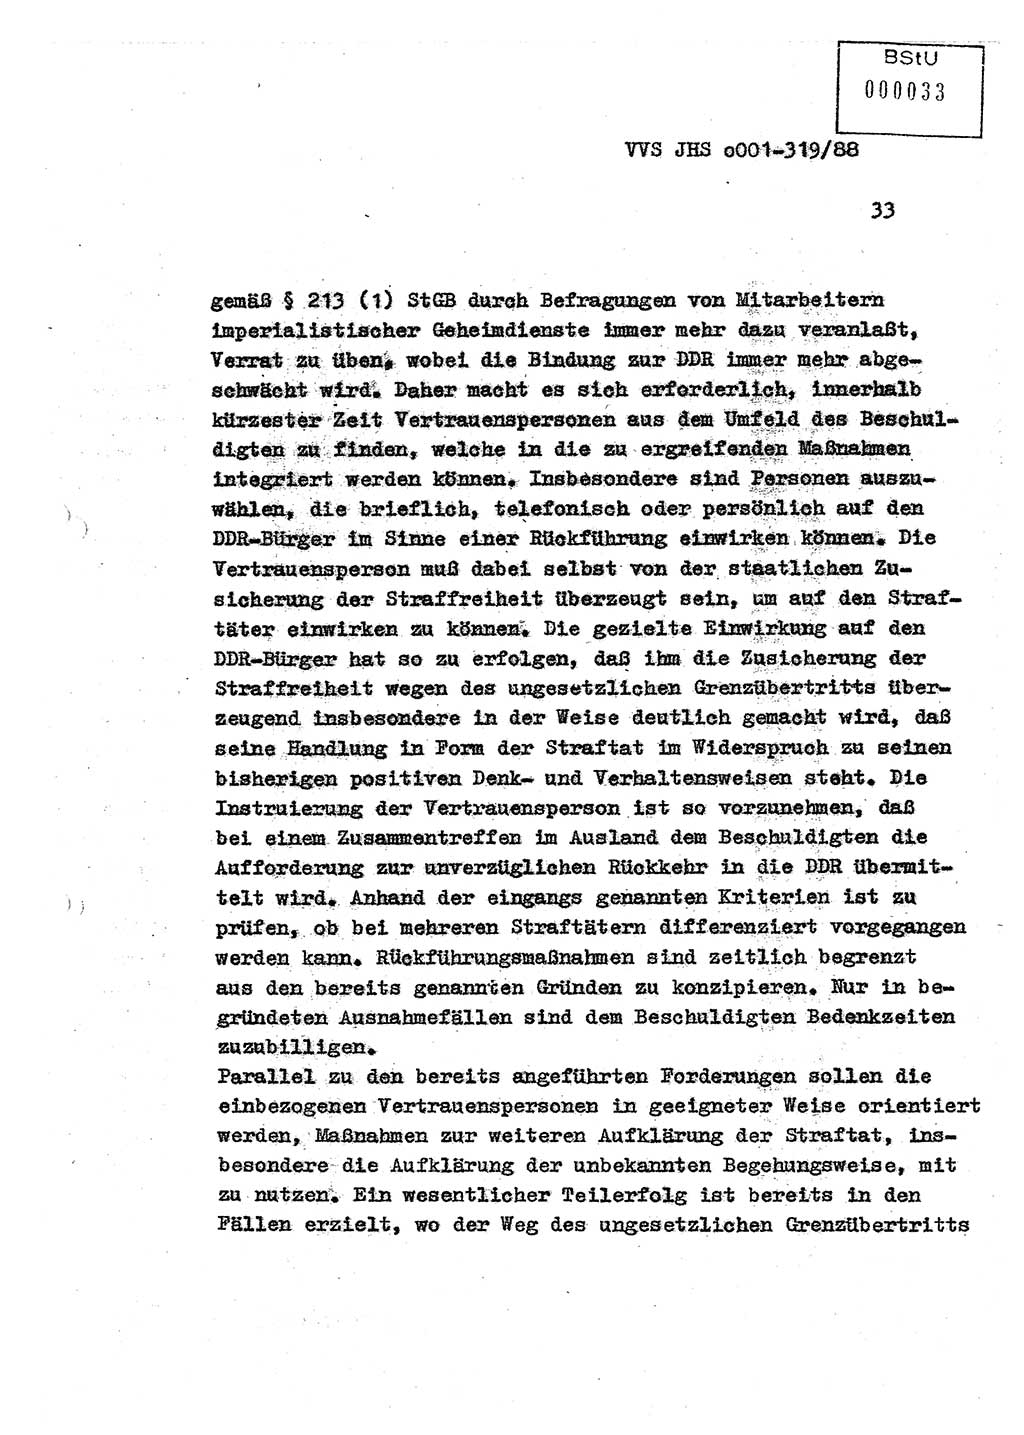 Diplomarbeit Offiziersschüler Holger Zirnstein (HA Ⅸ/9), Ministerium für Staatssicherheit (MfS) [Deutsche Demokratische Republik (DDR)], Juristische Hochschule (JHS), Vertrauliche Verschlußsache (VVS) o001-319/88, Potsdam 1988, Blatt 33 (Dipl.-Arb. MfS DDR JHS VVS o001-319/88 1988, Bl. 33)